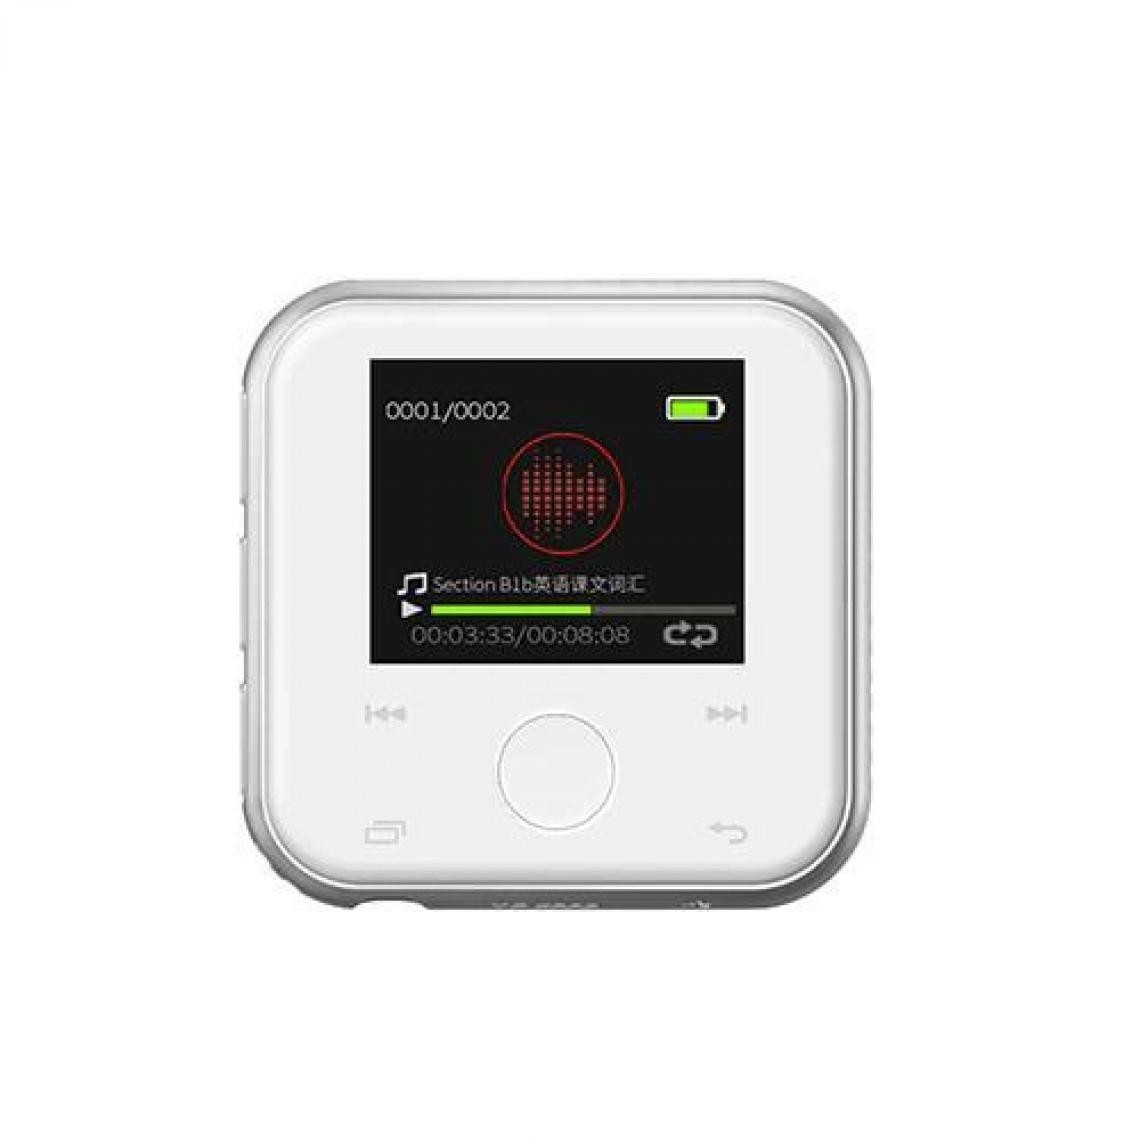 Universal - Lecteur HiFi Bluetooth Mini Métal Vidéo FM Magnétophone Écran tactile 1,8 pouces avec haut-parleur Support TF Card | Lecteur MP3 (Blanc) - Radio, lecteur CD/MP3 enfant